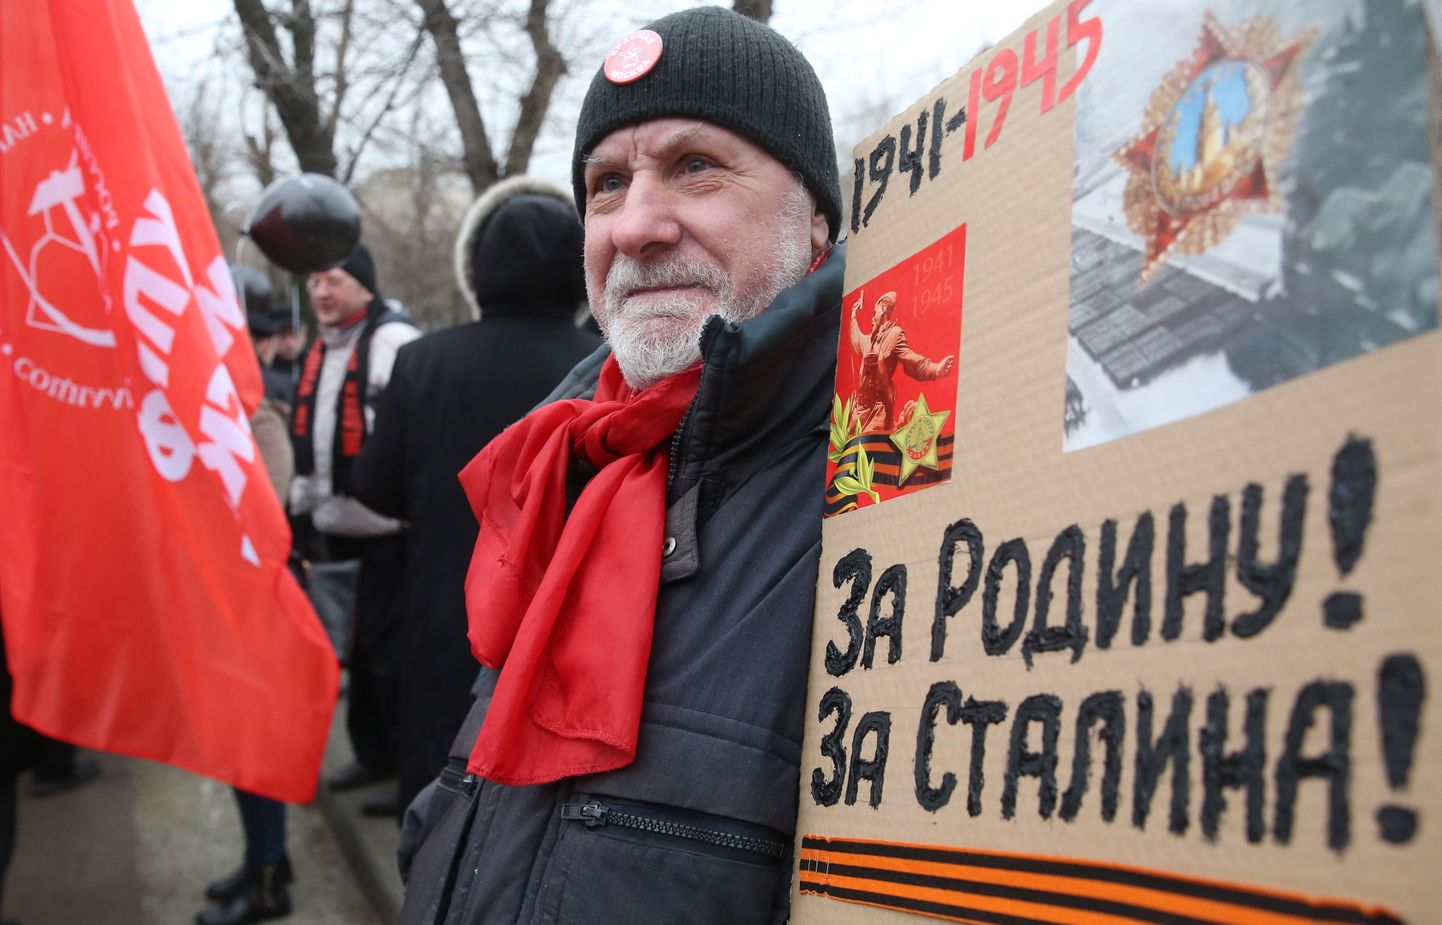 Kommunistliku partei demonstratsioon Moskvas. Mees hoiab silti, millele on kirjutatud «Kodumaa nimel! Stalini nimel!».